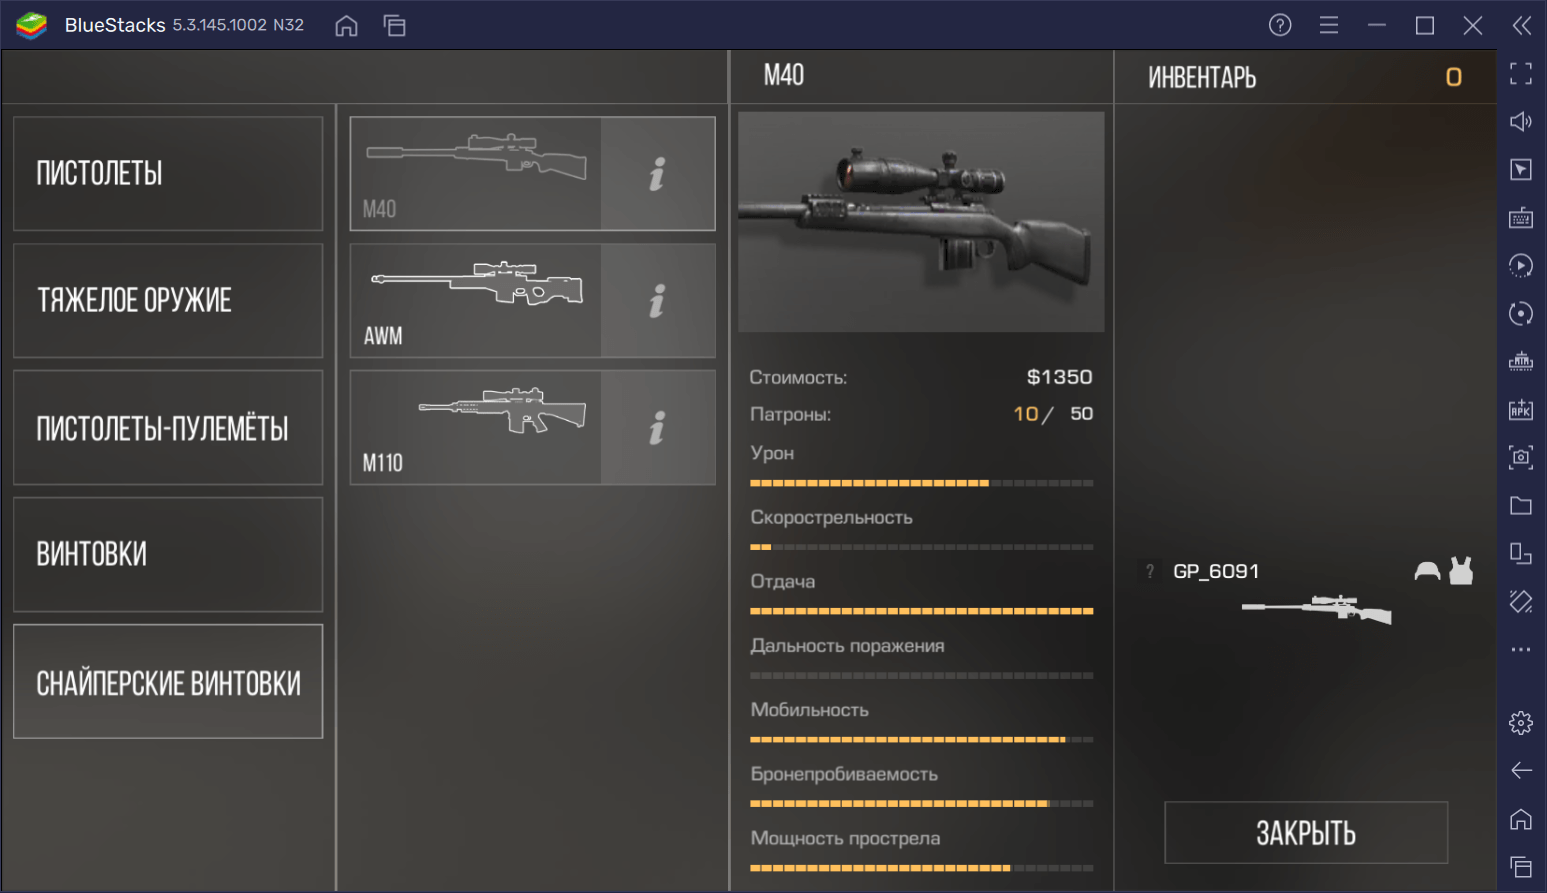 Гайд по снайперской винтовке M40 в Standoff 2: обзор характеристик, тактики эффективной игры и доступных скинов